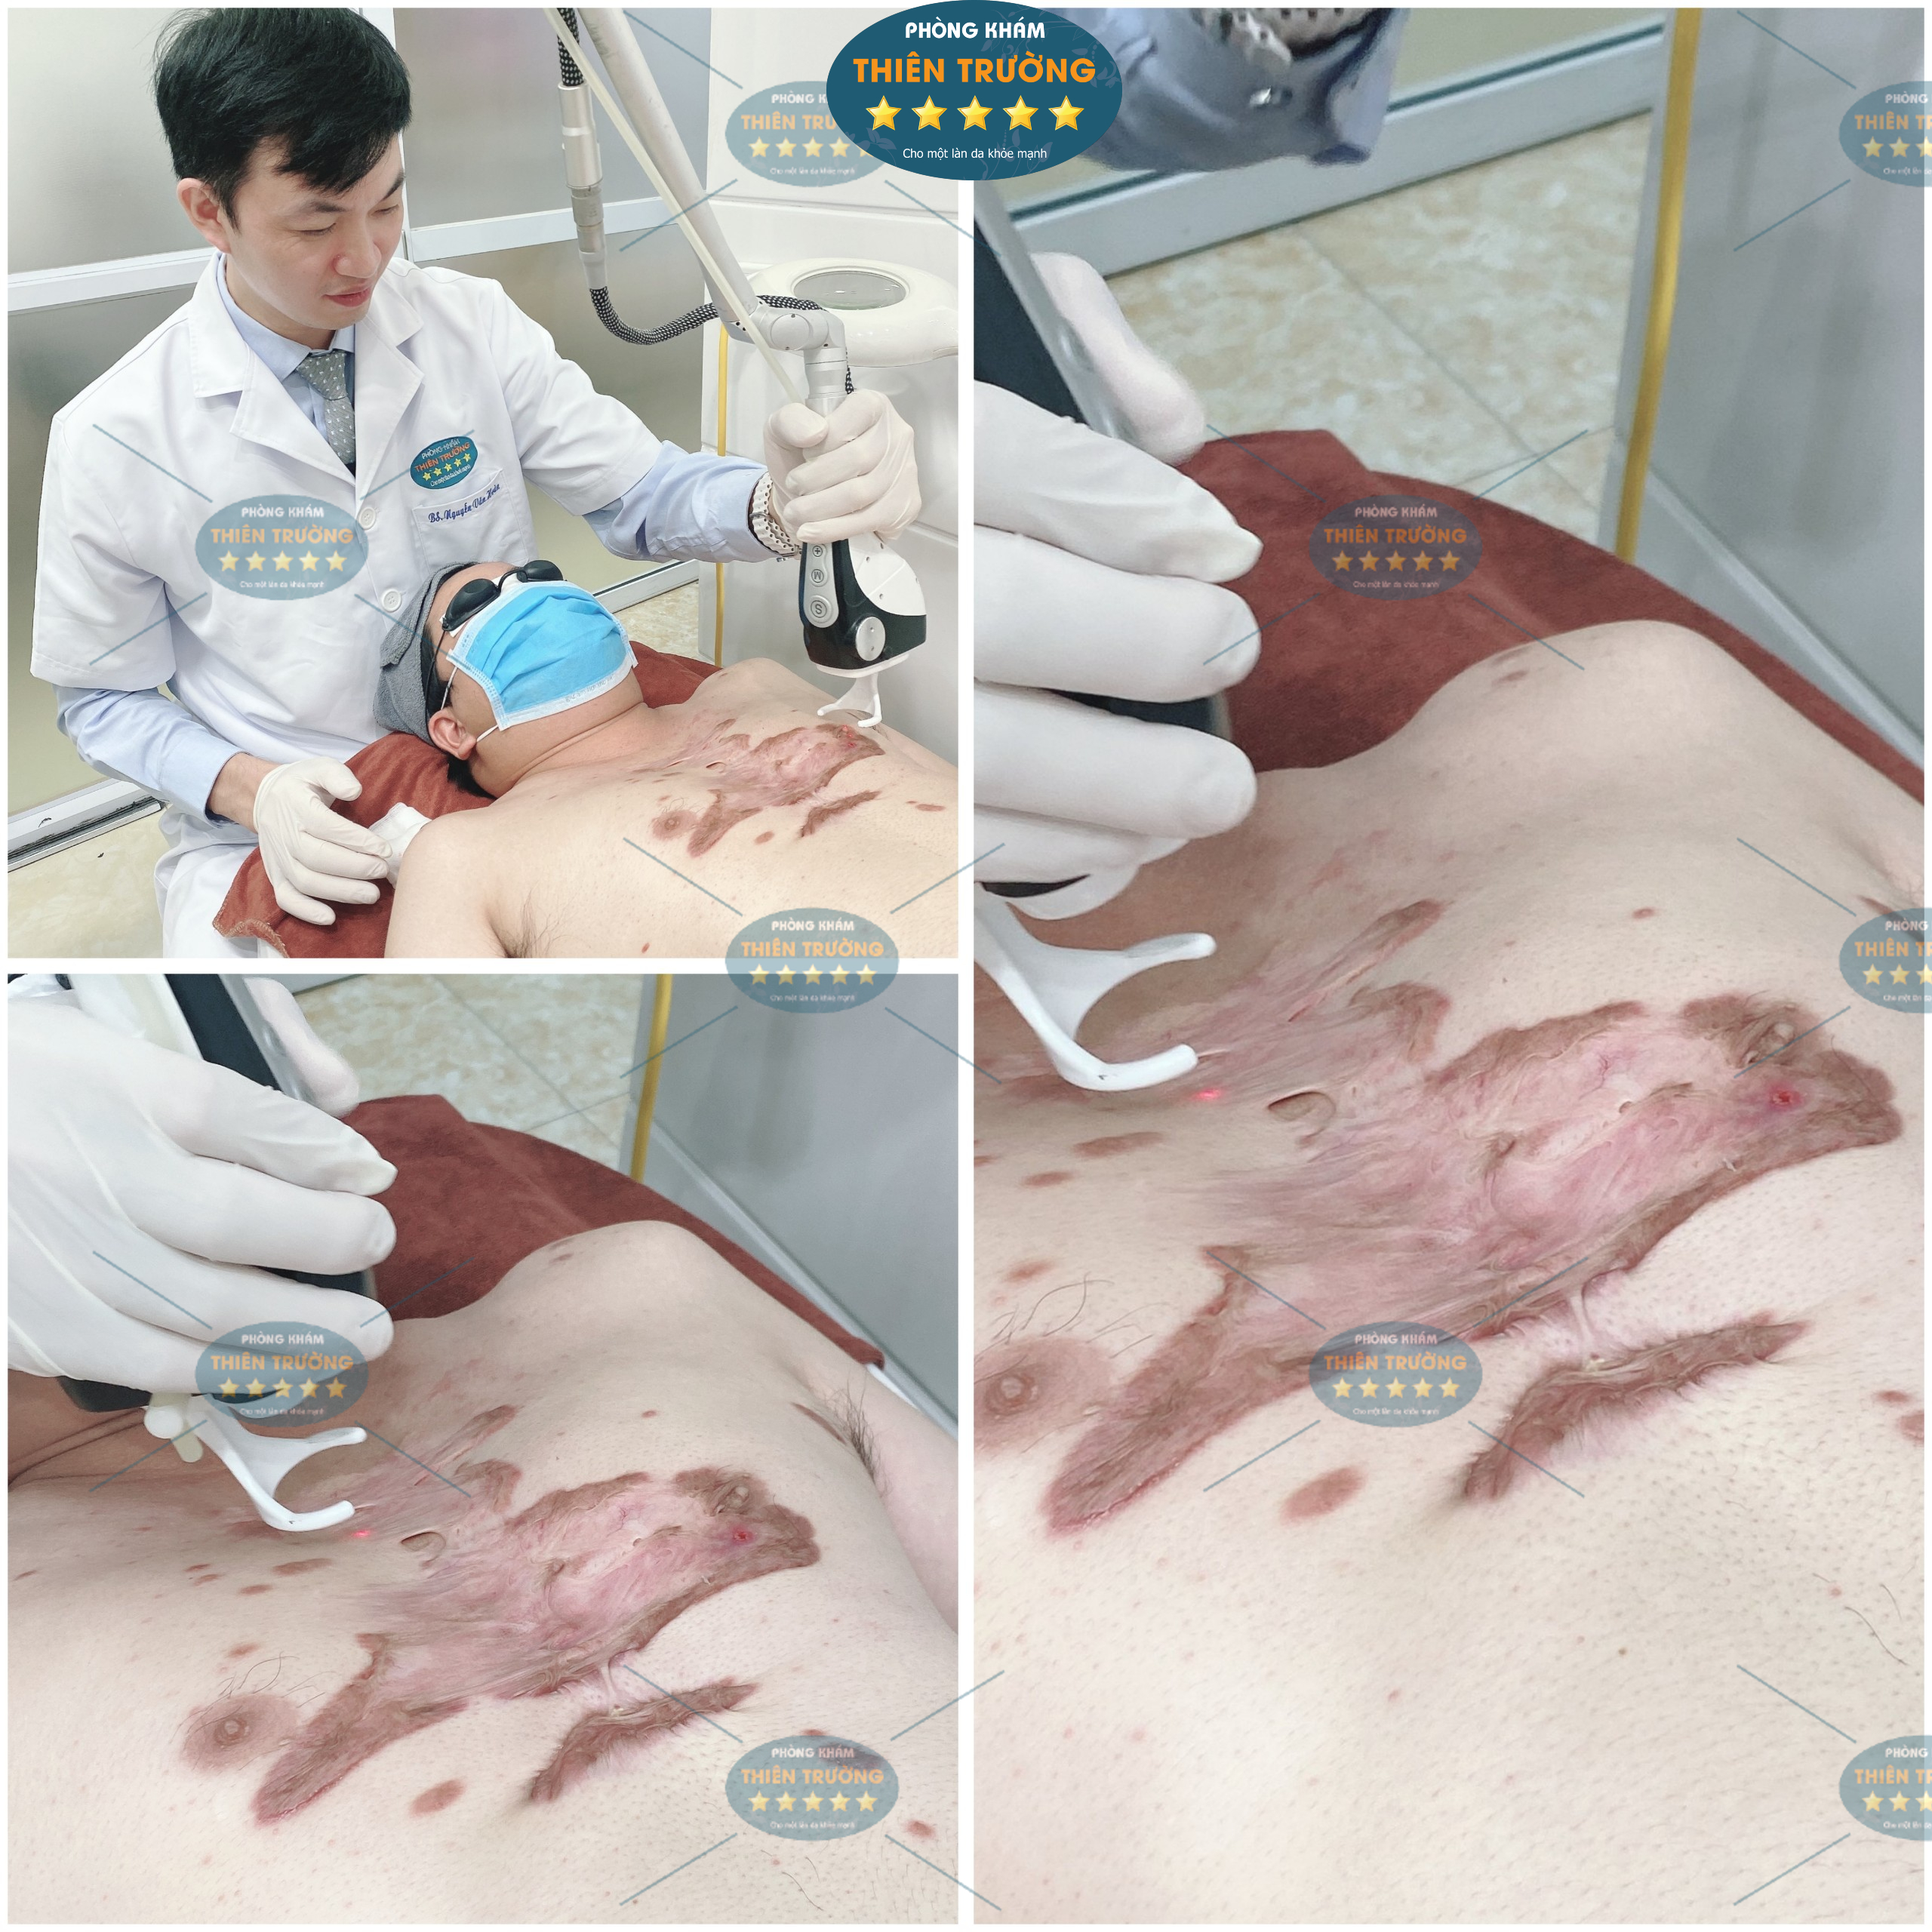 Hình ảnh: Thạc sĩ- Bác sĩ Nguyễn Văn Hoàn trực tiếp điều trị sẹo lồi.